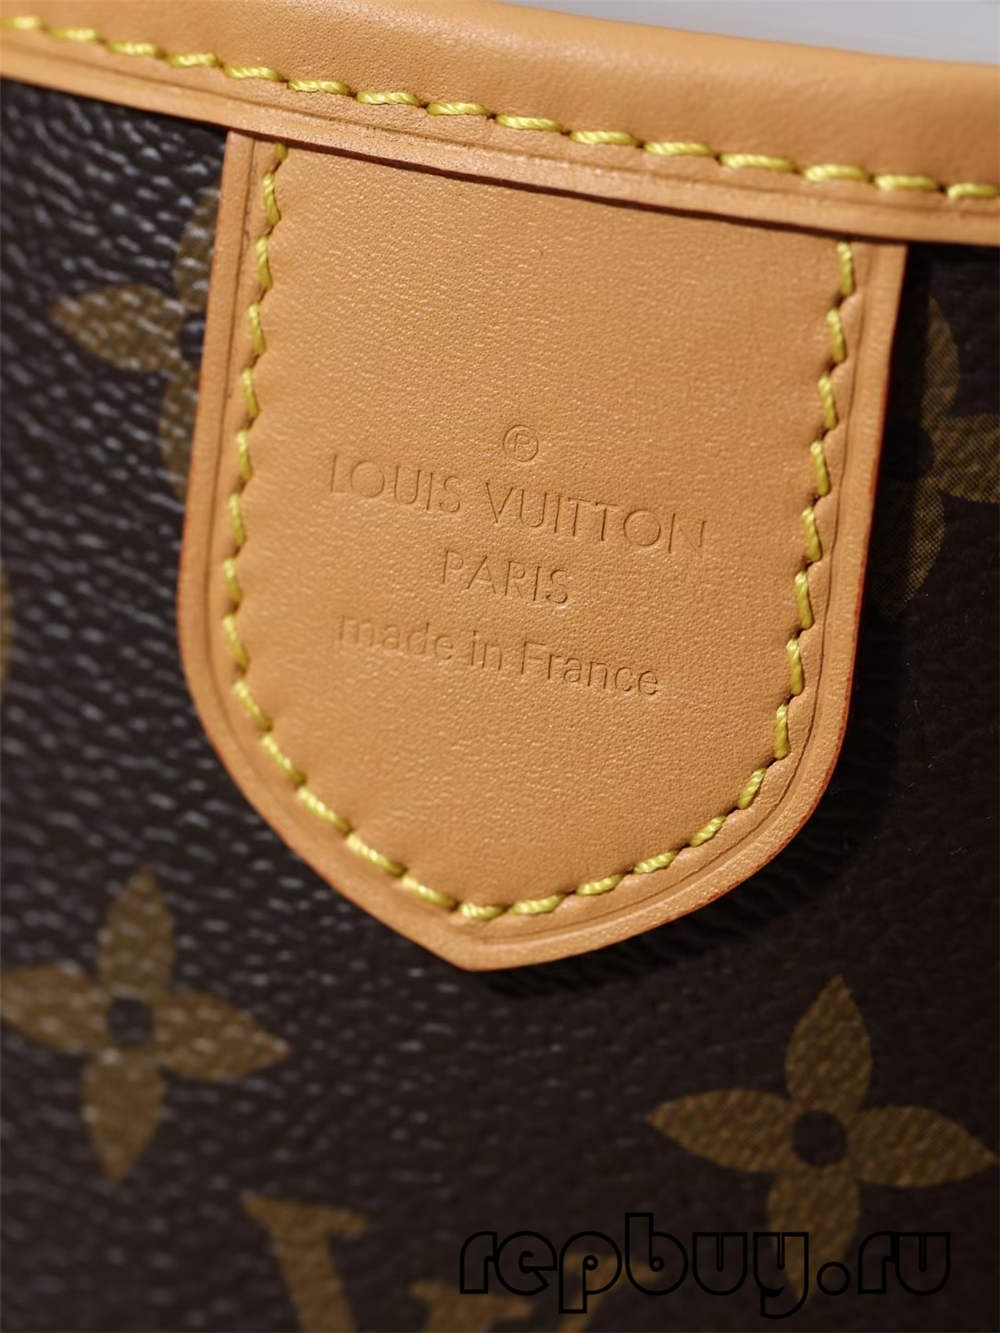 Louis Vuitton Re Fabrication उच्च दर्जाची प्रतिकृती बॅग（2022 नवीनतम）-सर्वोत्तम दर्जाची बनावट लुई व्हिटन बॅग ऑनलाइन स्टोअर, प्रतिकृती डिझायनर बॅग ru